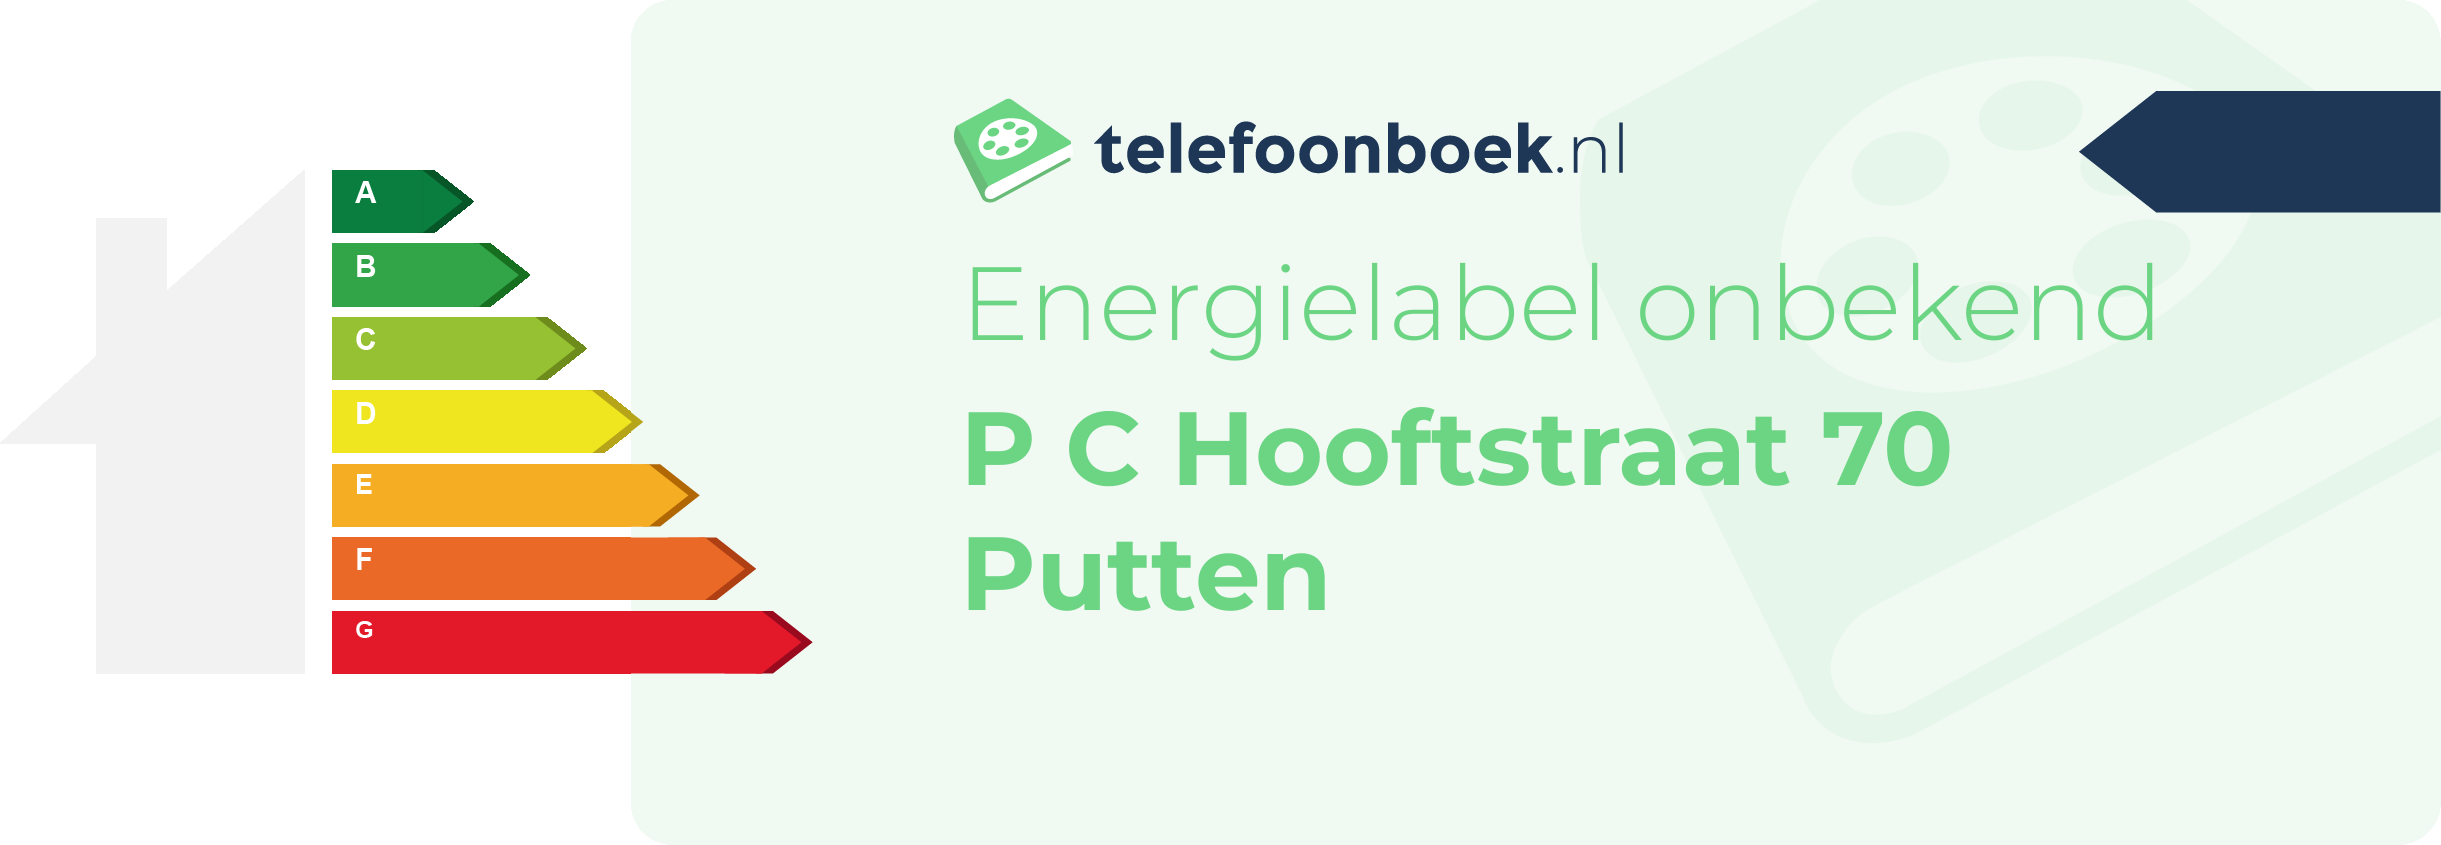 Energielabel P C Hooftstraat 70 Putten